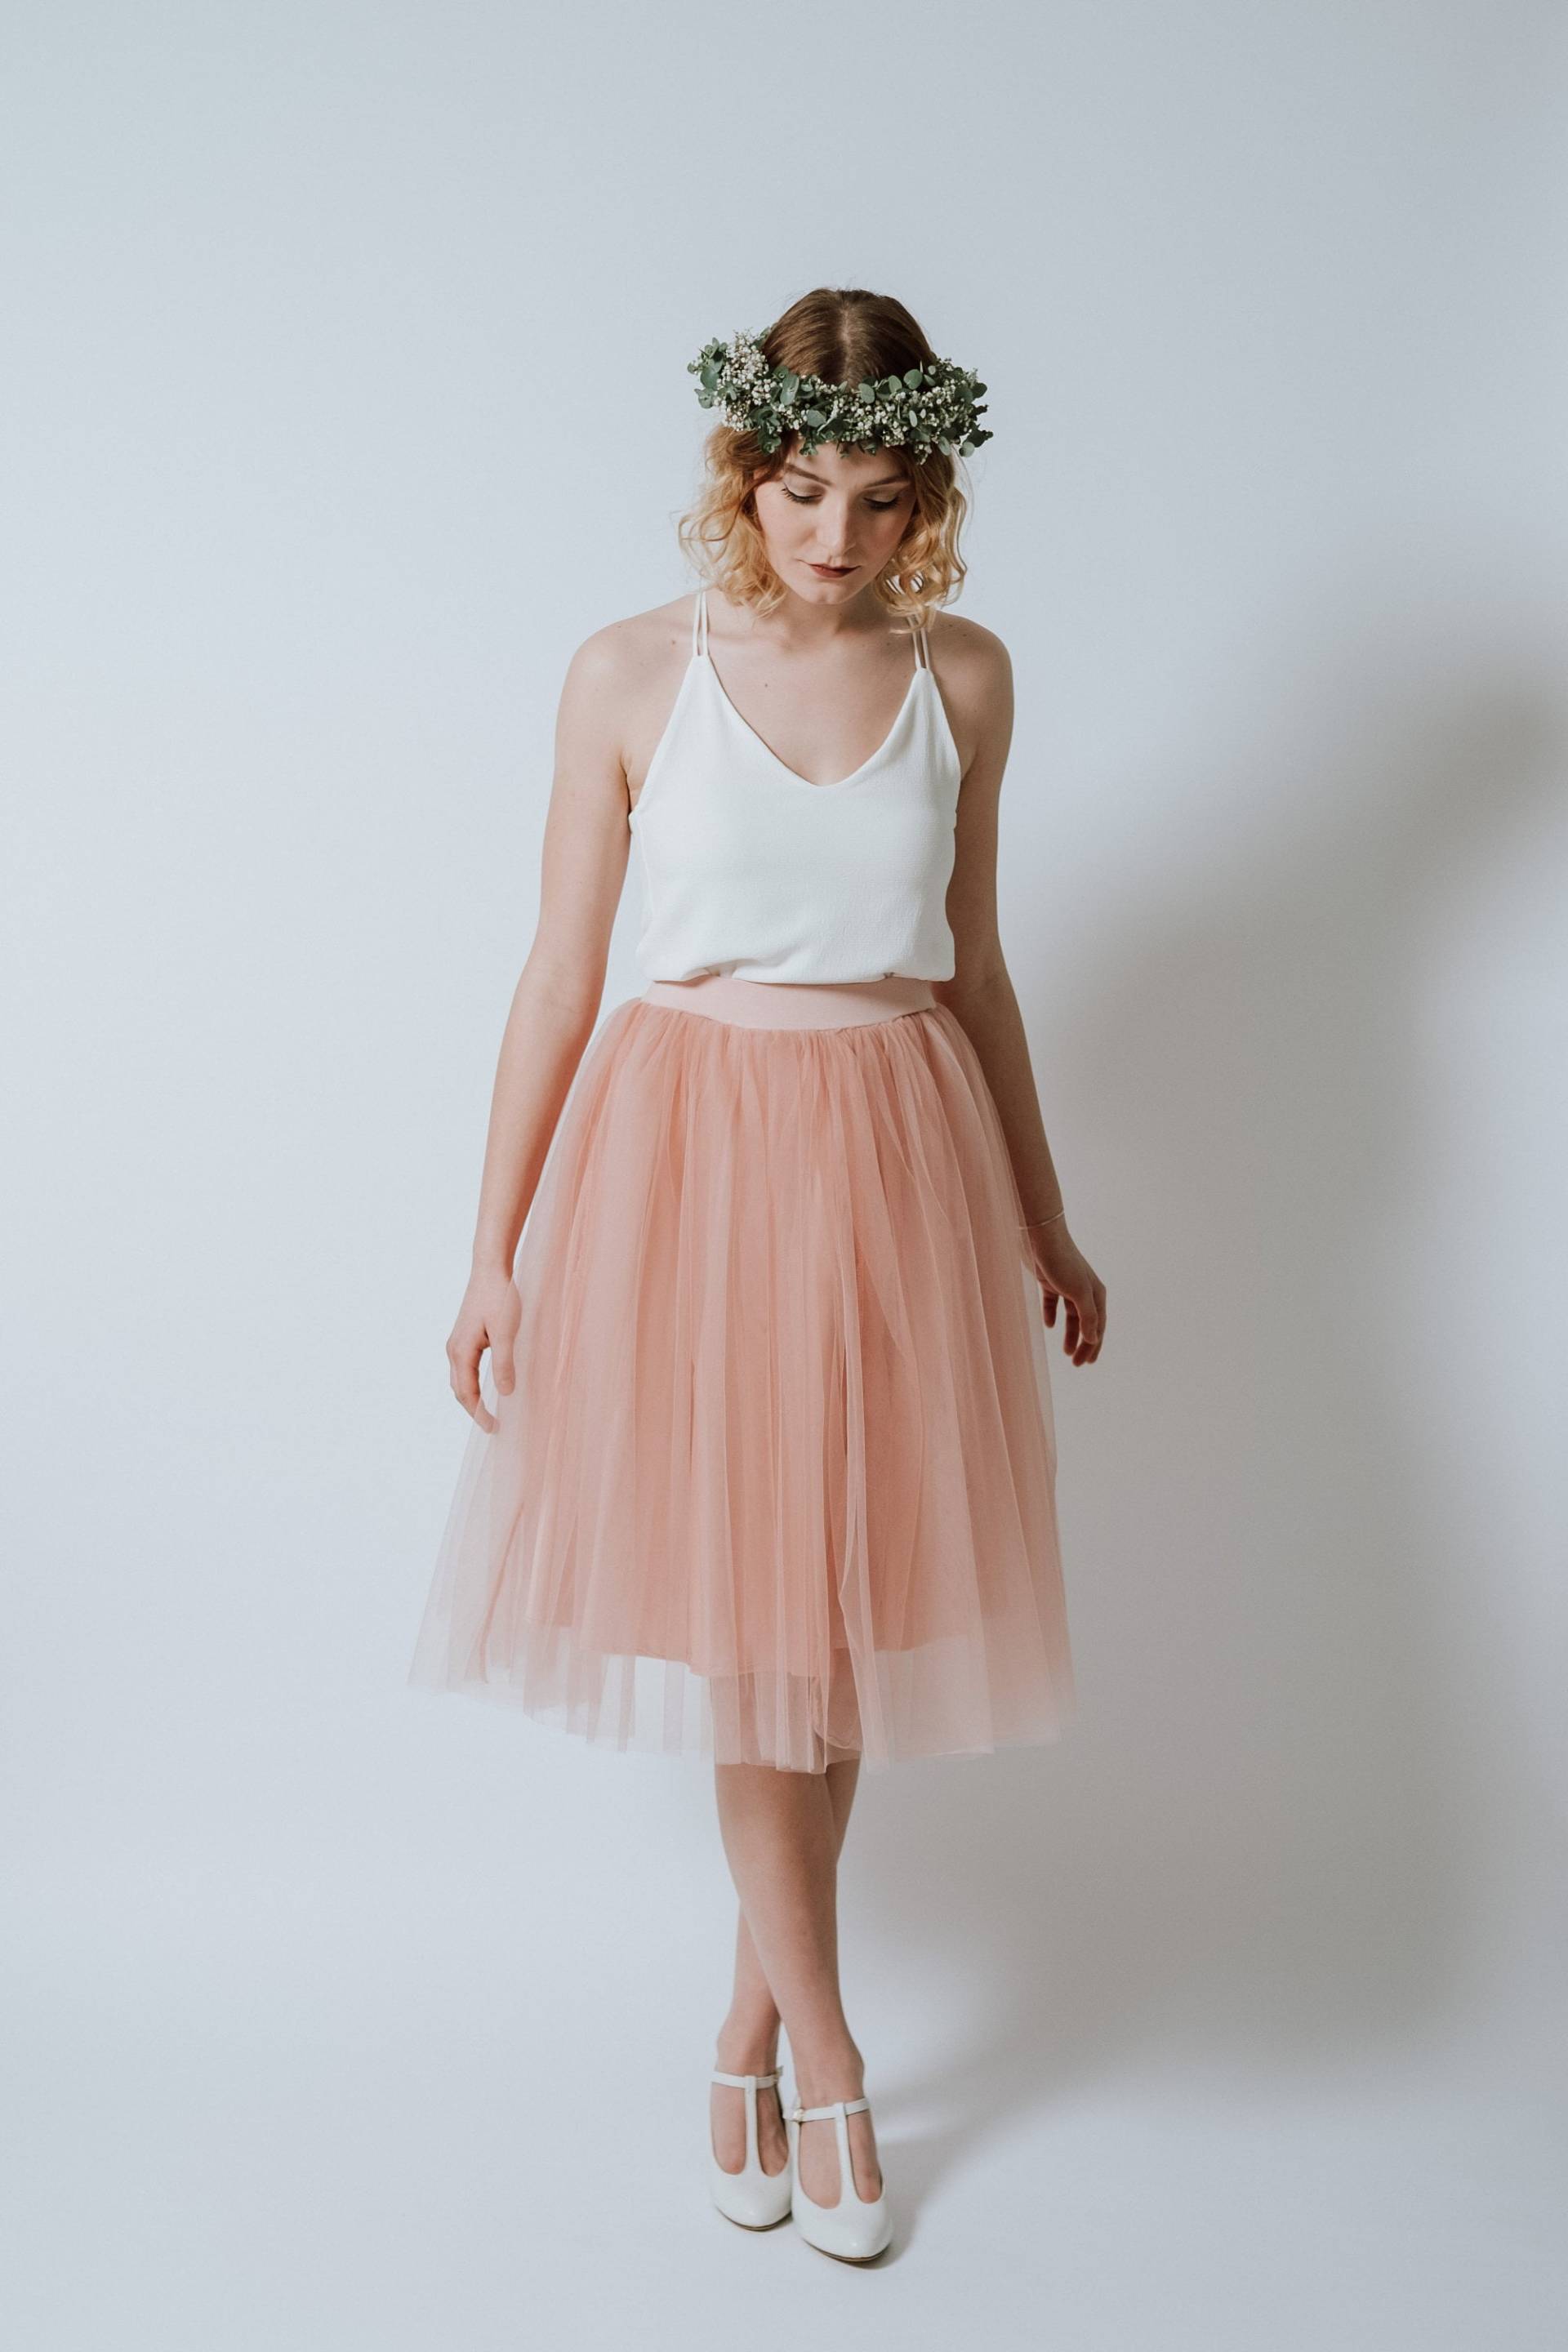 Kleid "Pearl Blush" Mit Großem Tüllrock in Pfirsichrosa von AveevABoutique